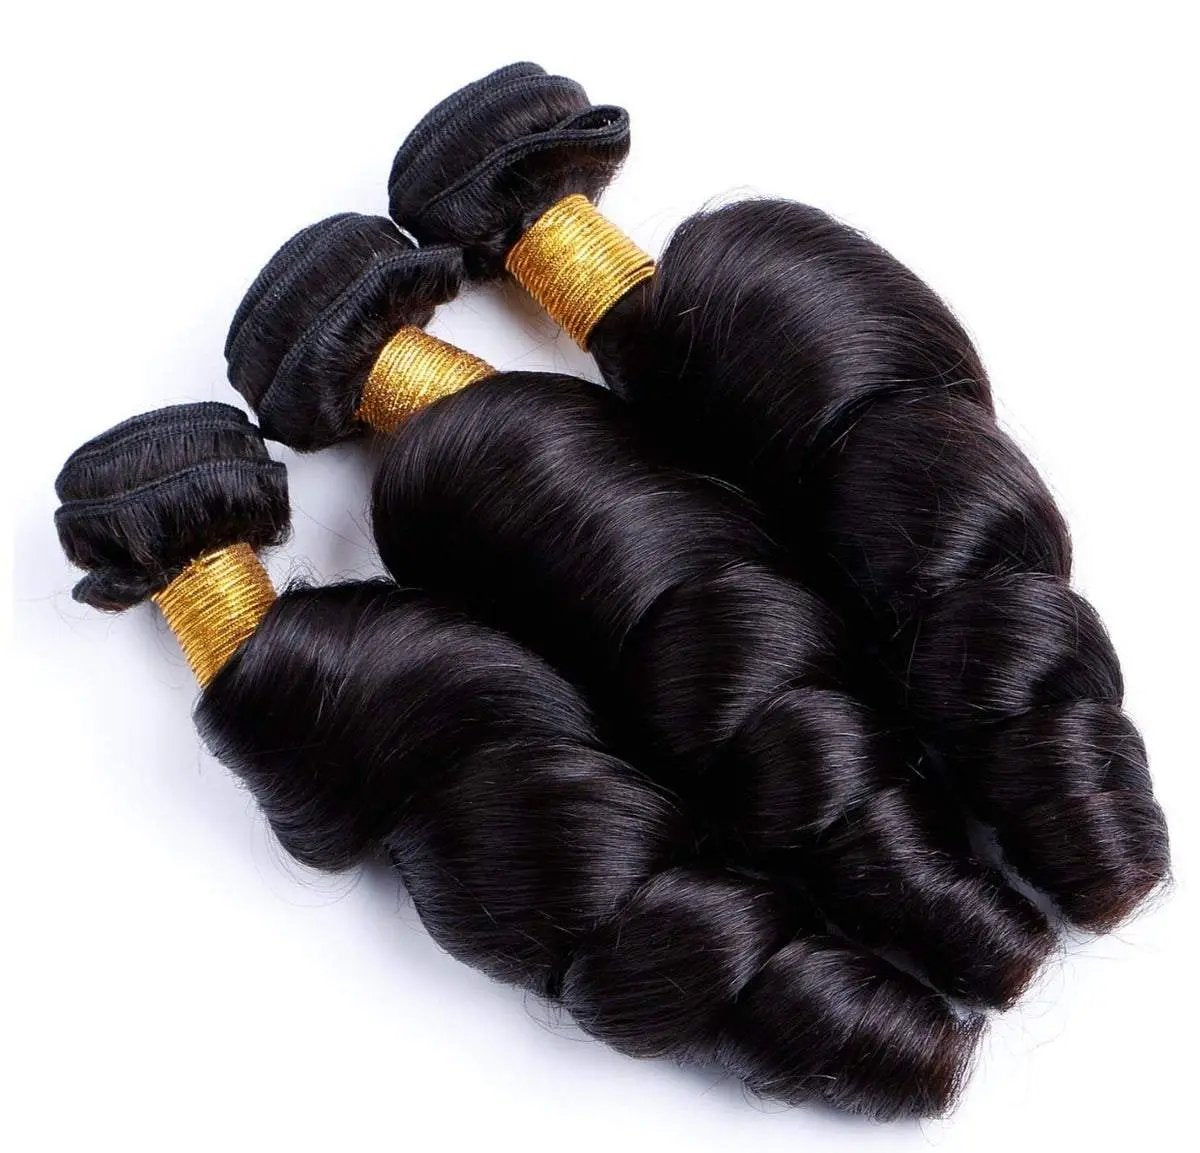 BeuMAX 10A Grade 3/4 Loose Wave Bundles Peruvian Human Hair Extensions